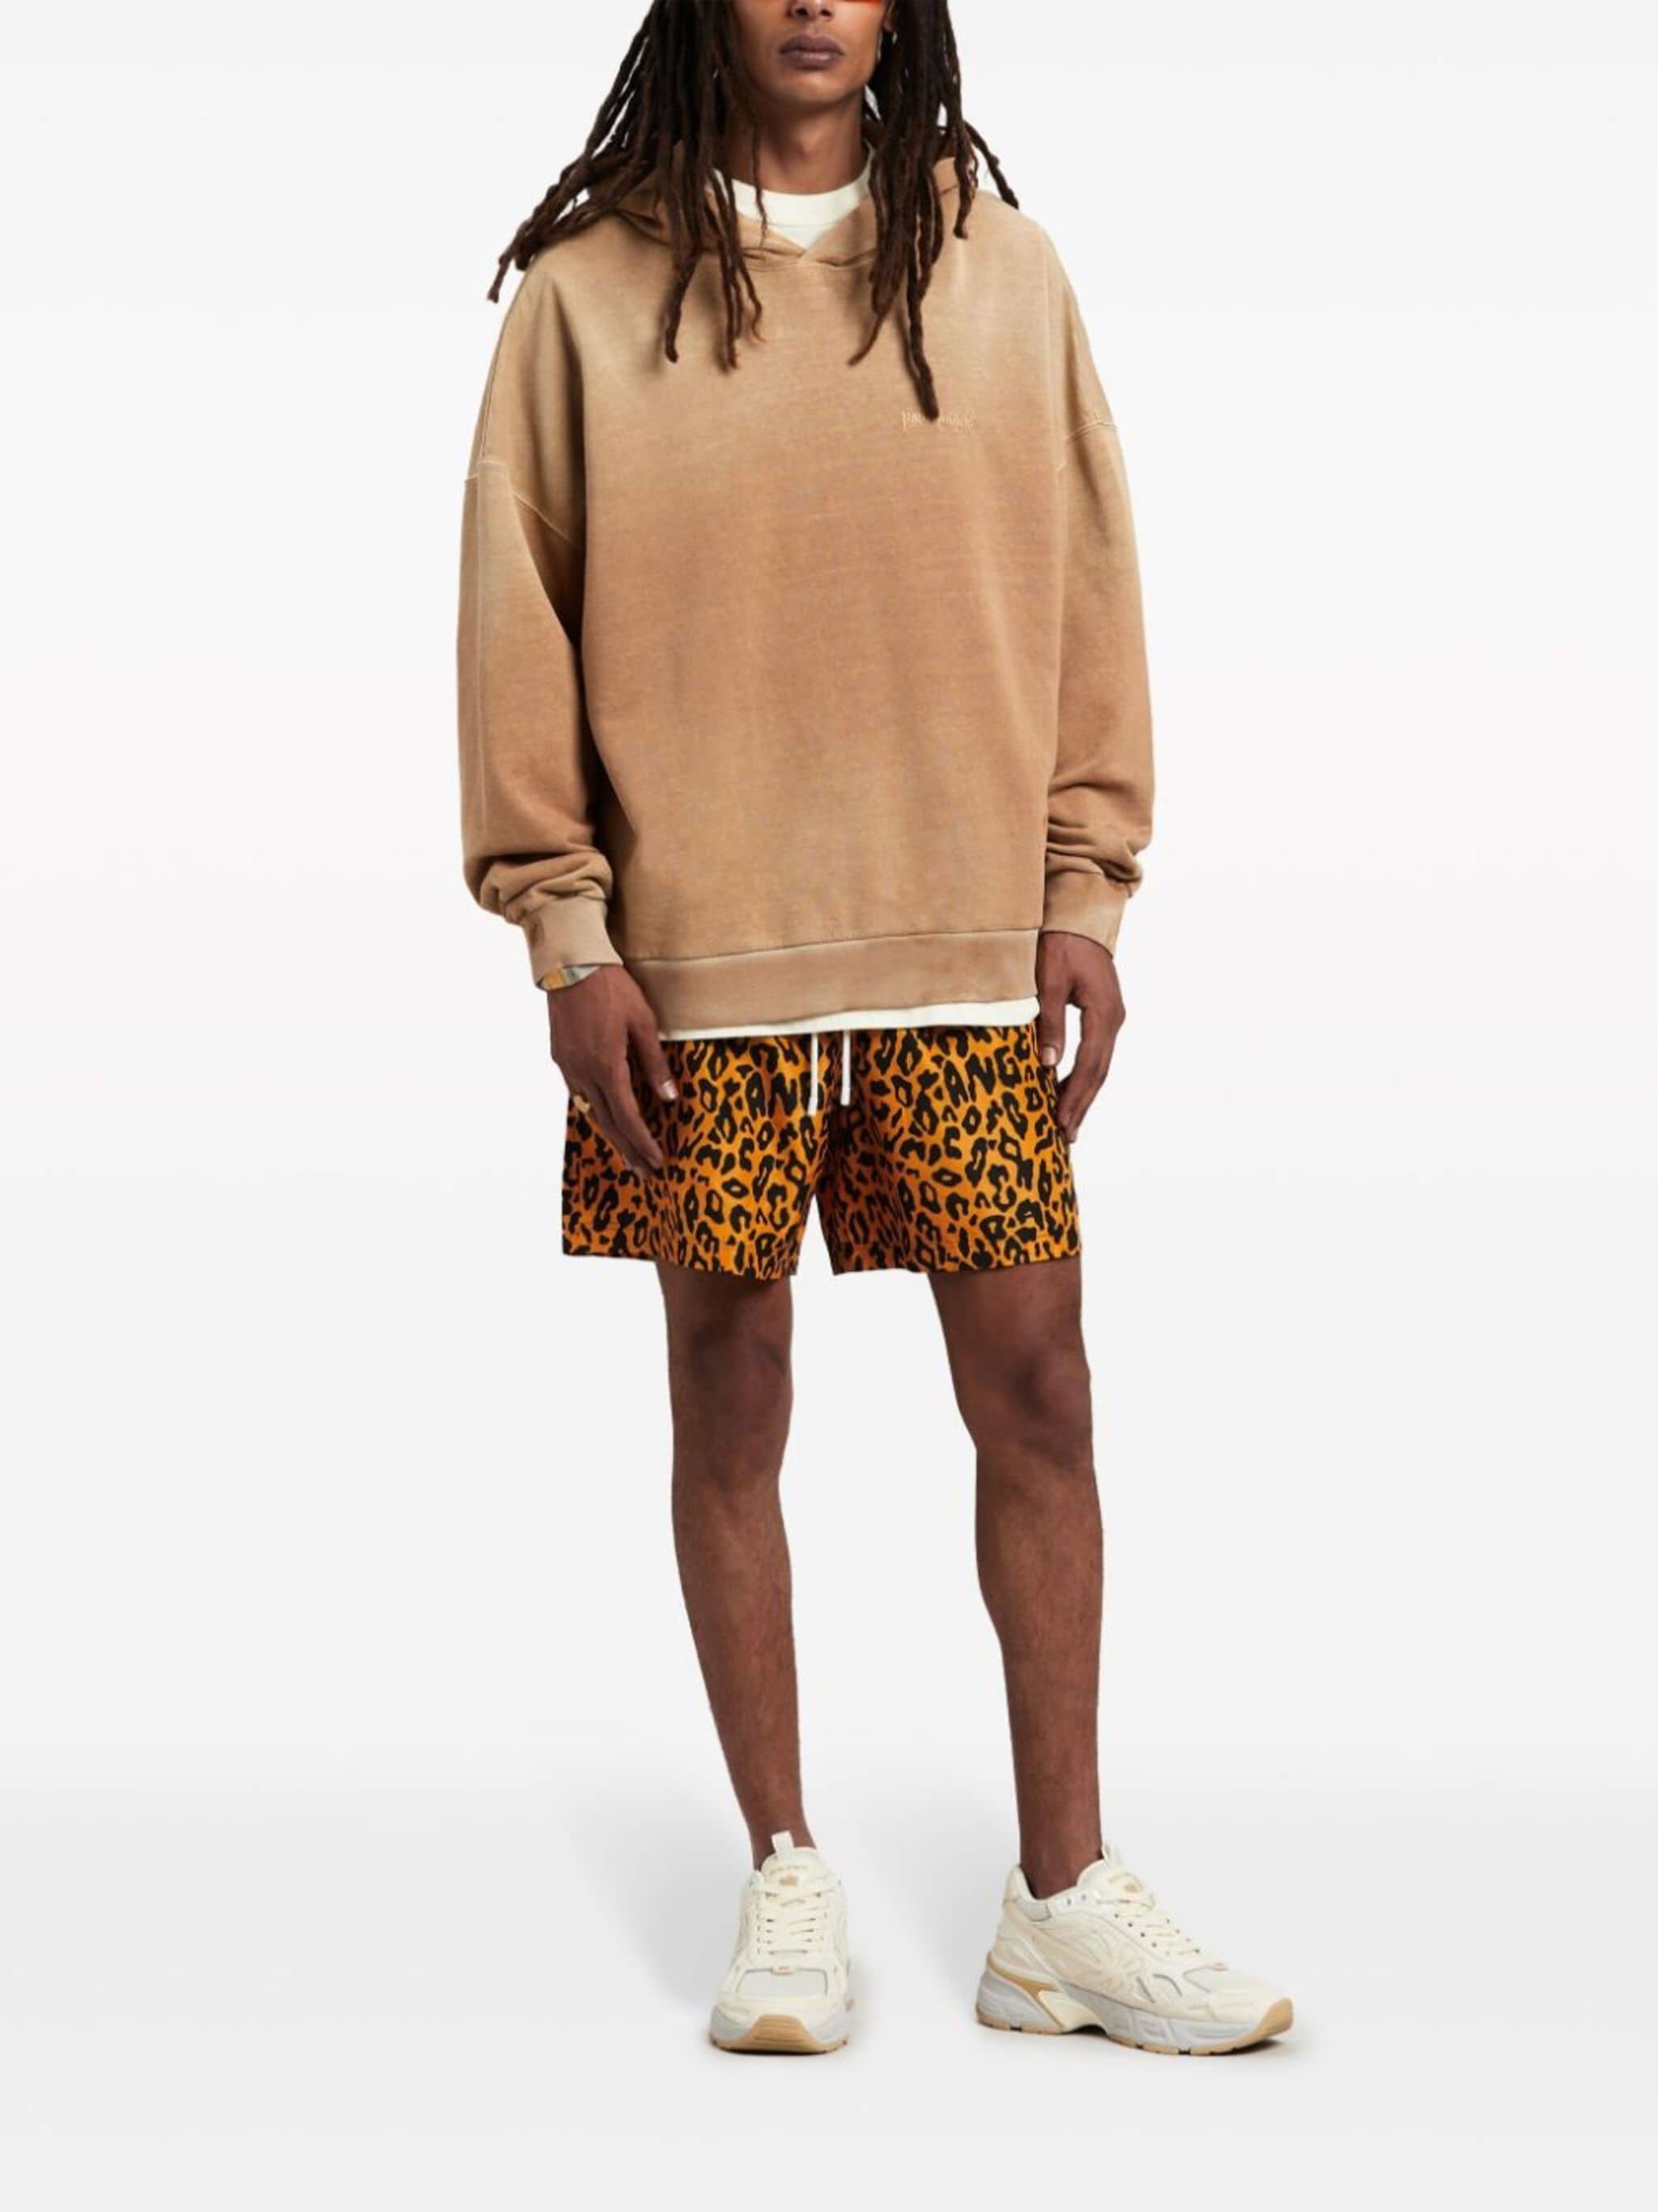 cheetah-print swim shorts - 2